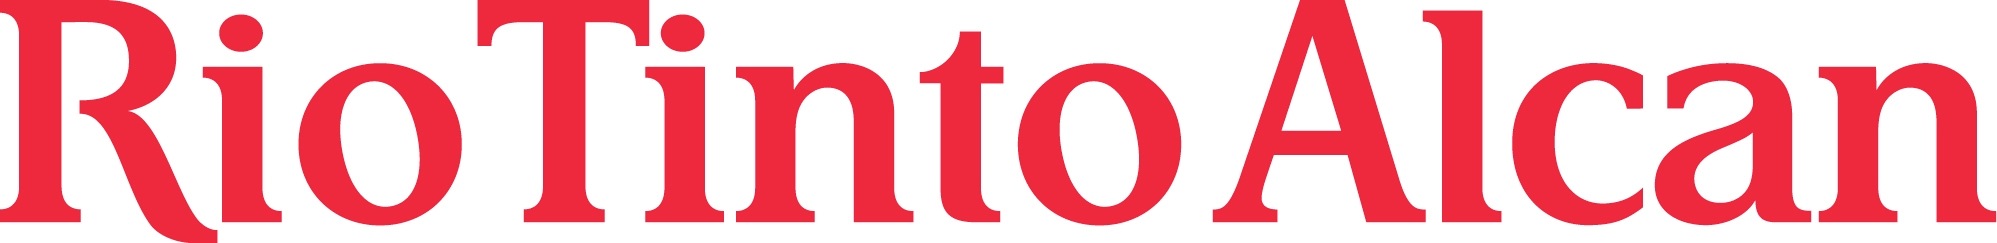 Rio Tinto Alcan Logo-125.jpg